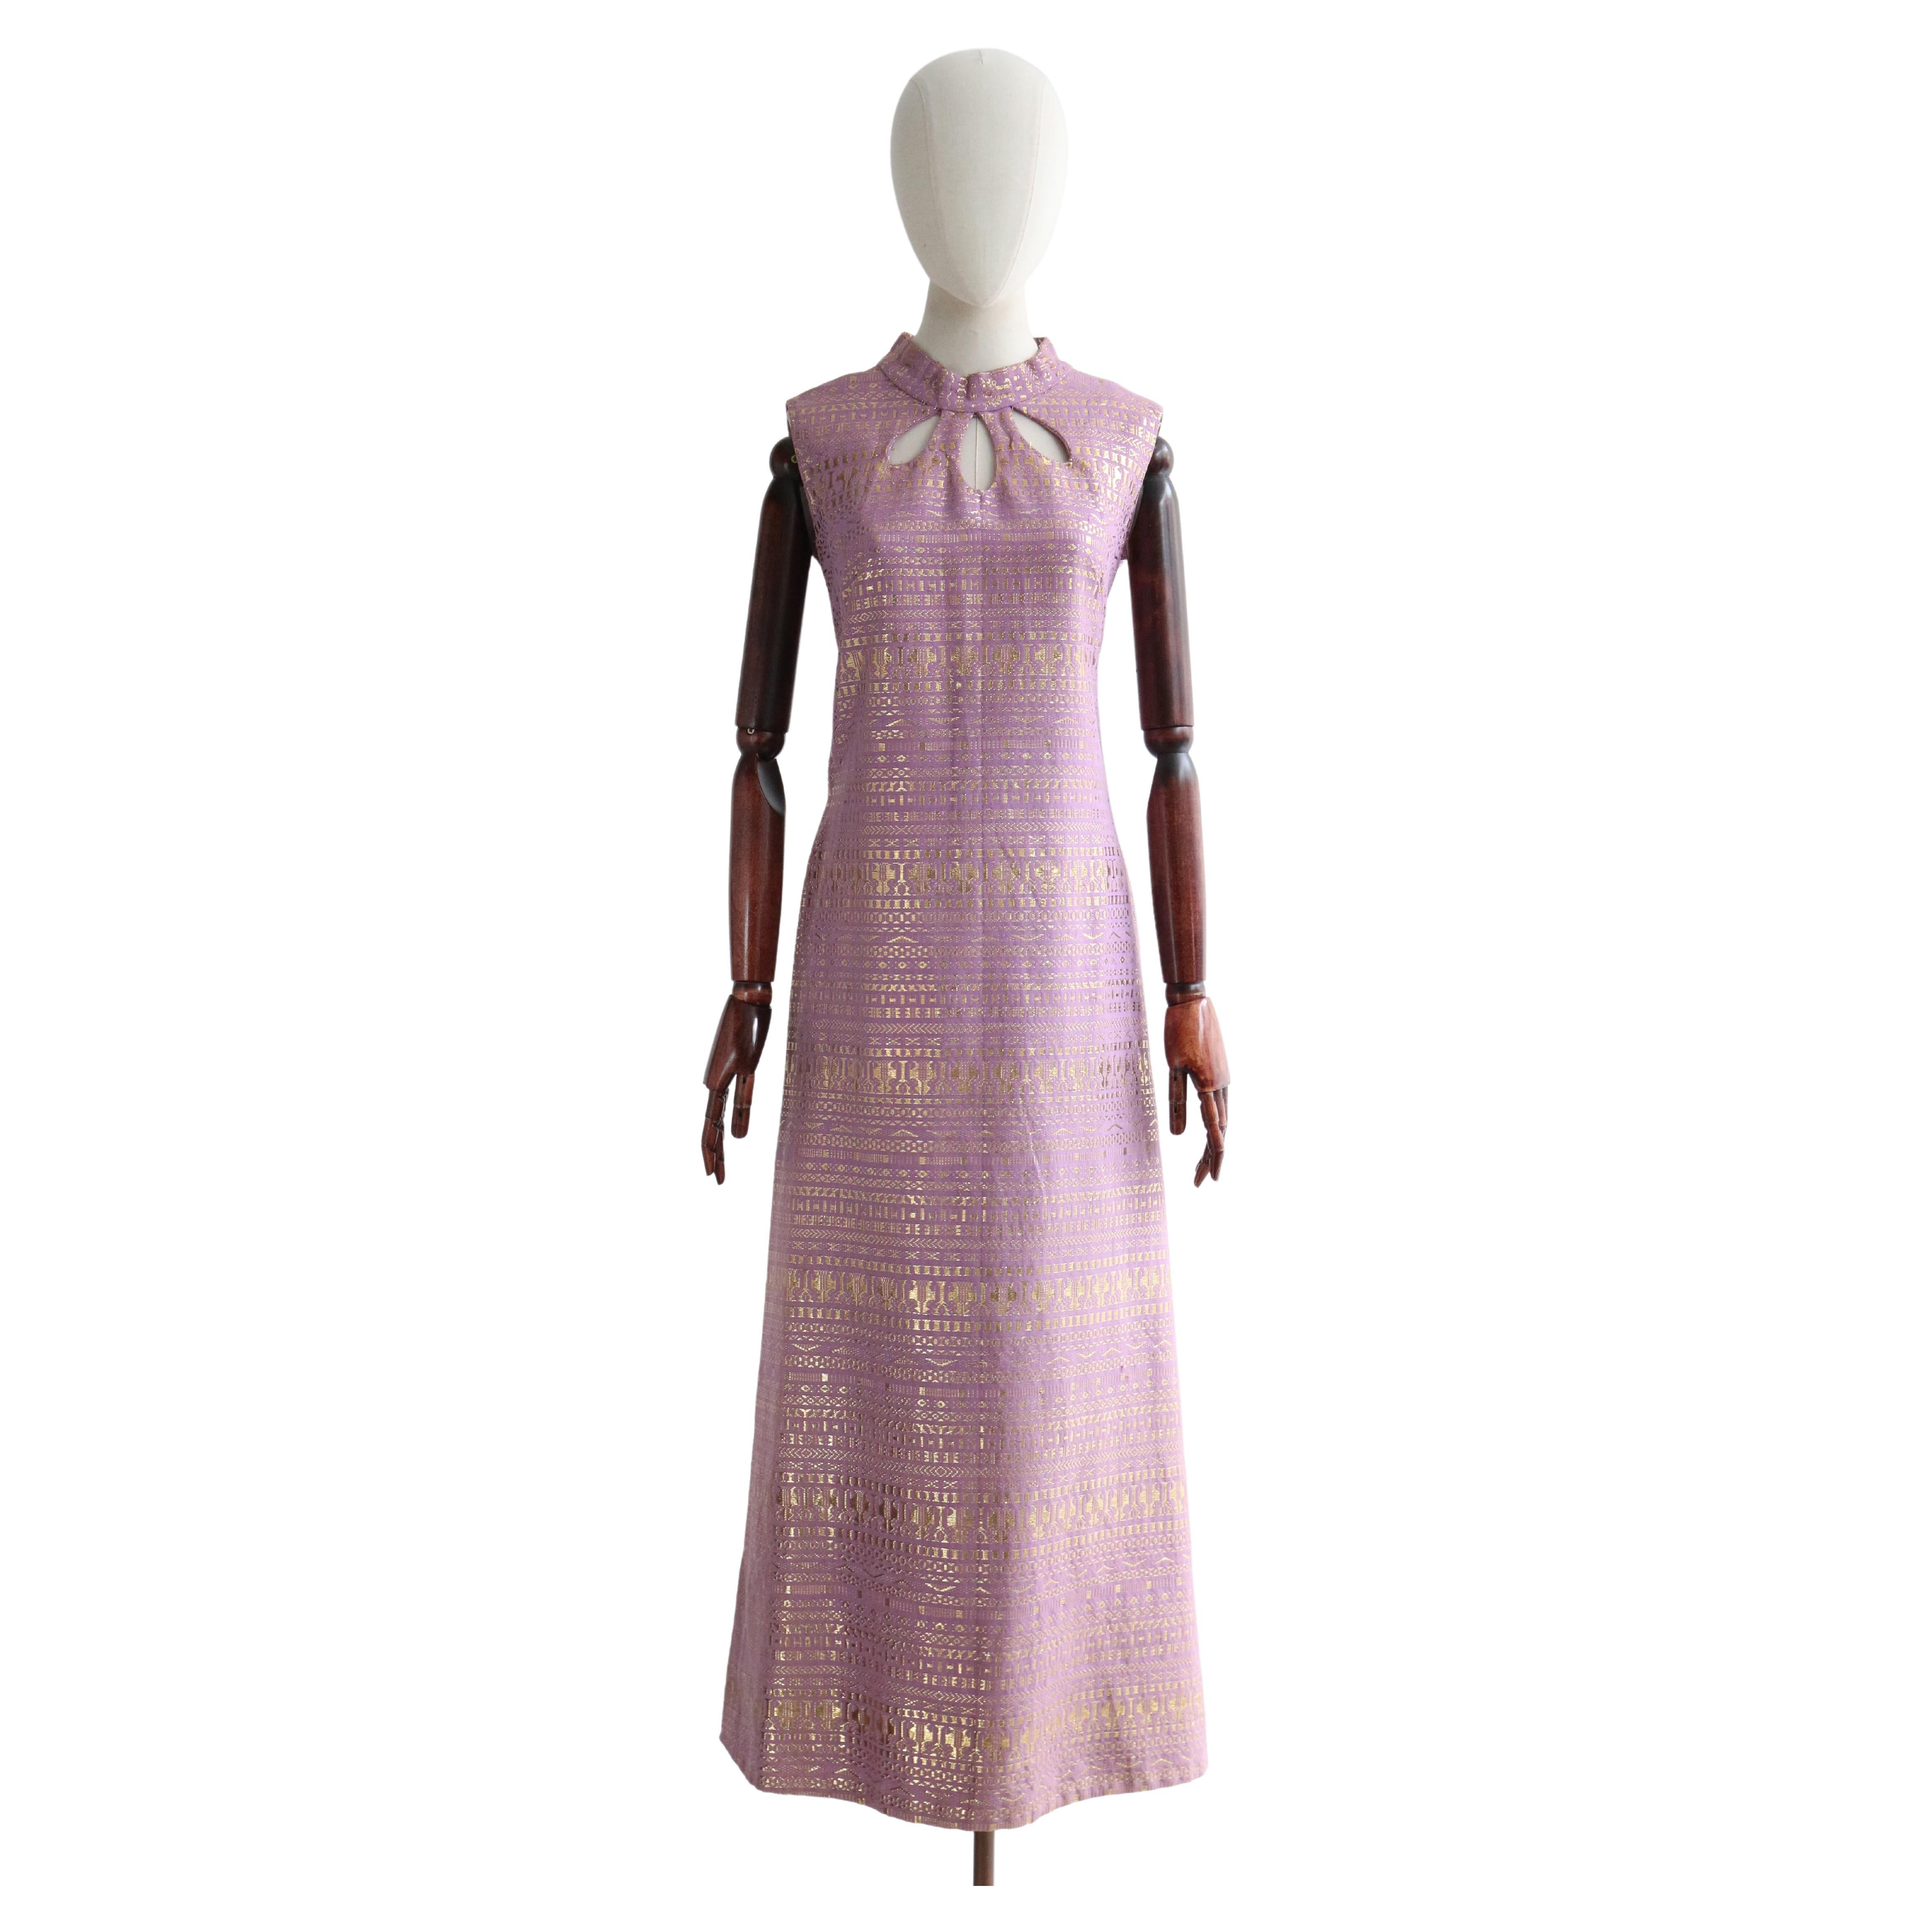 Robe vintage en lurex lilas et or avec trou de serrure (années 1960), taille UK 12-14 US 8-10